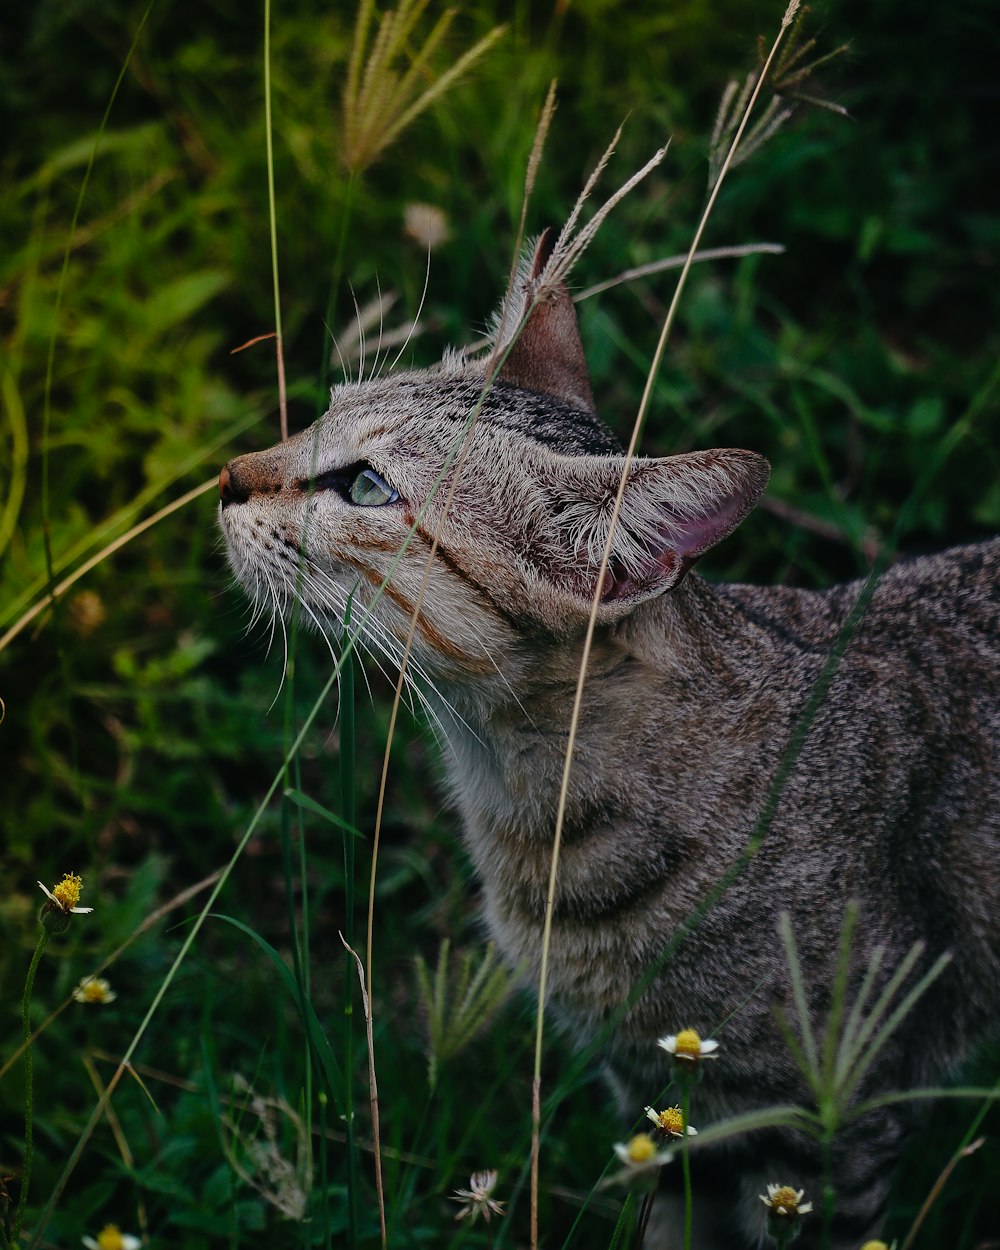 a cat in a bush